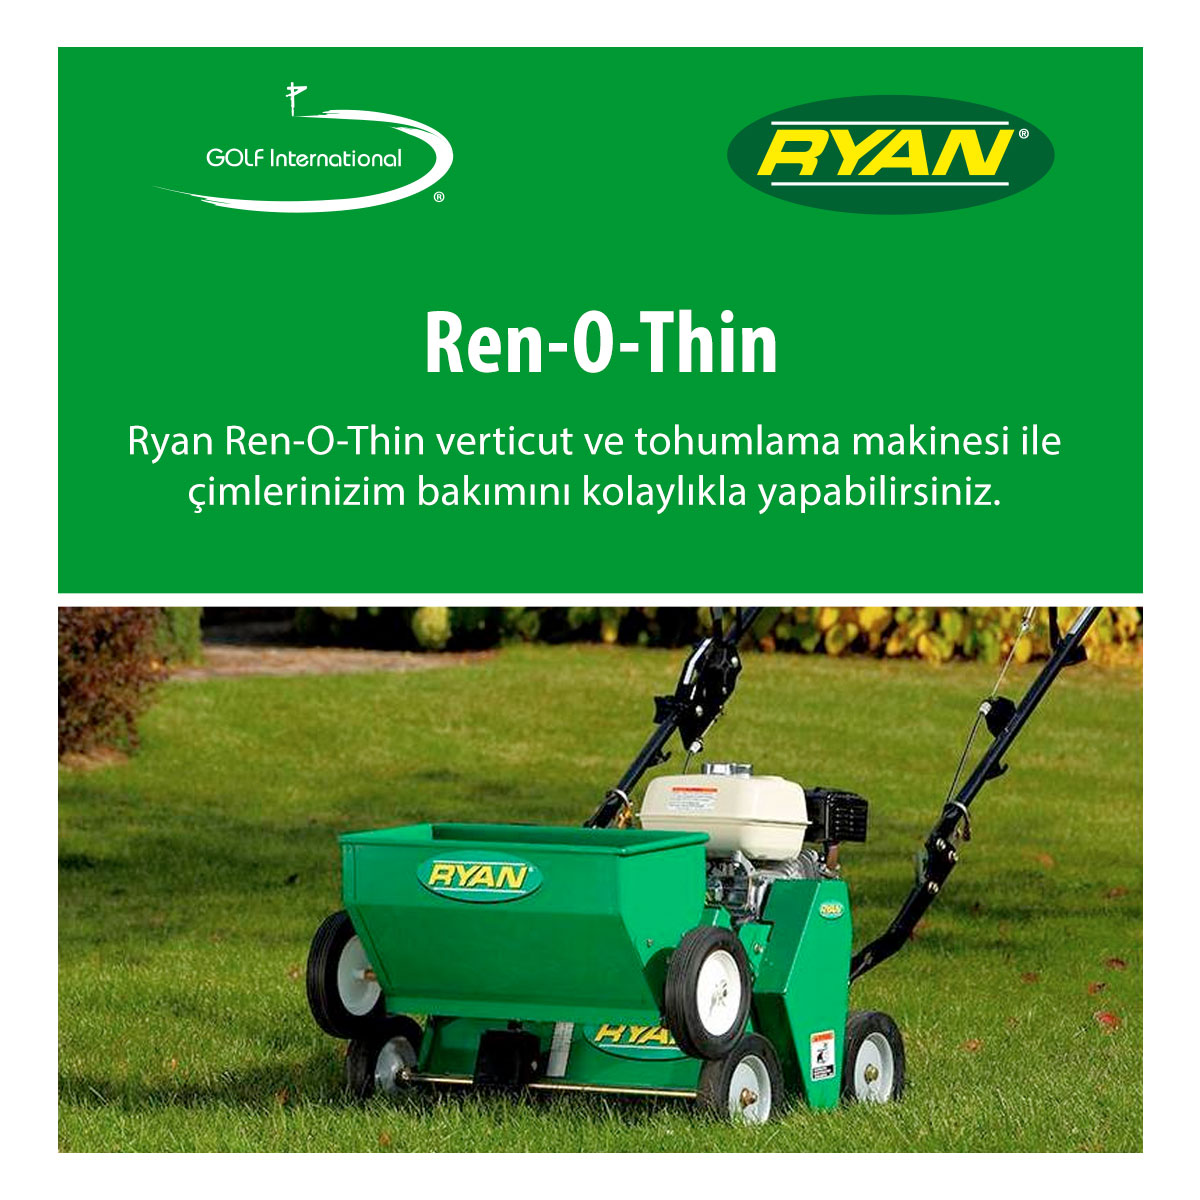 #Ryan Ren-O-Thin verticut ve tohumlama makinesi ile çimlerinizim bakımını kolaylıkla yapabilirsiniz. 
#Golf #GolfInternational #RyanTurf #Verticut #Seeding #Aeration #Turfcare #Greenkeeper #lawncare #winter #winterkills #diy #remedies #RenOThin @RyanTurf